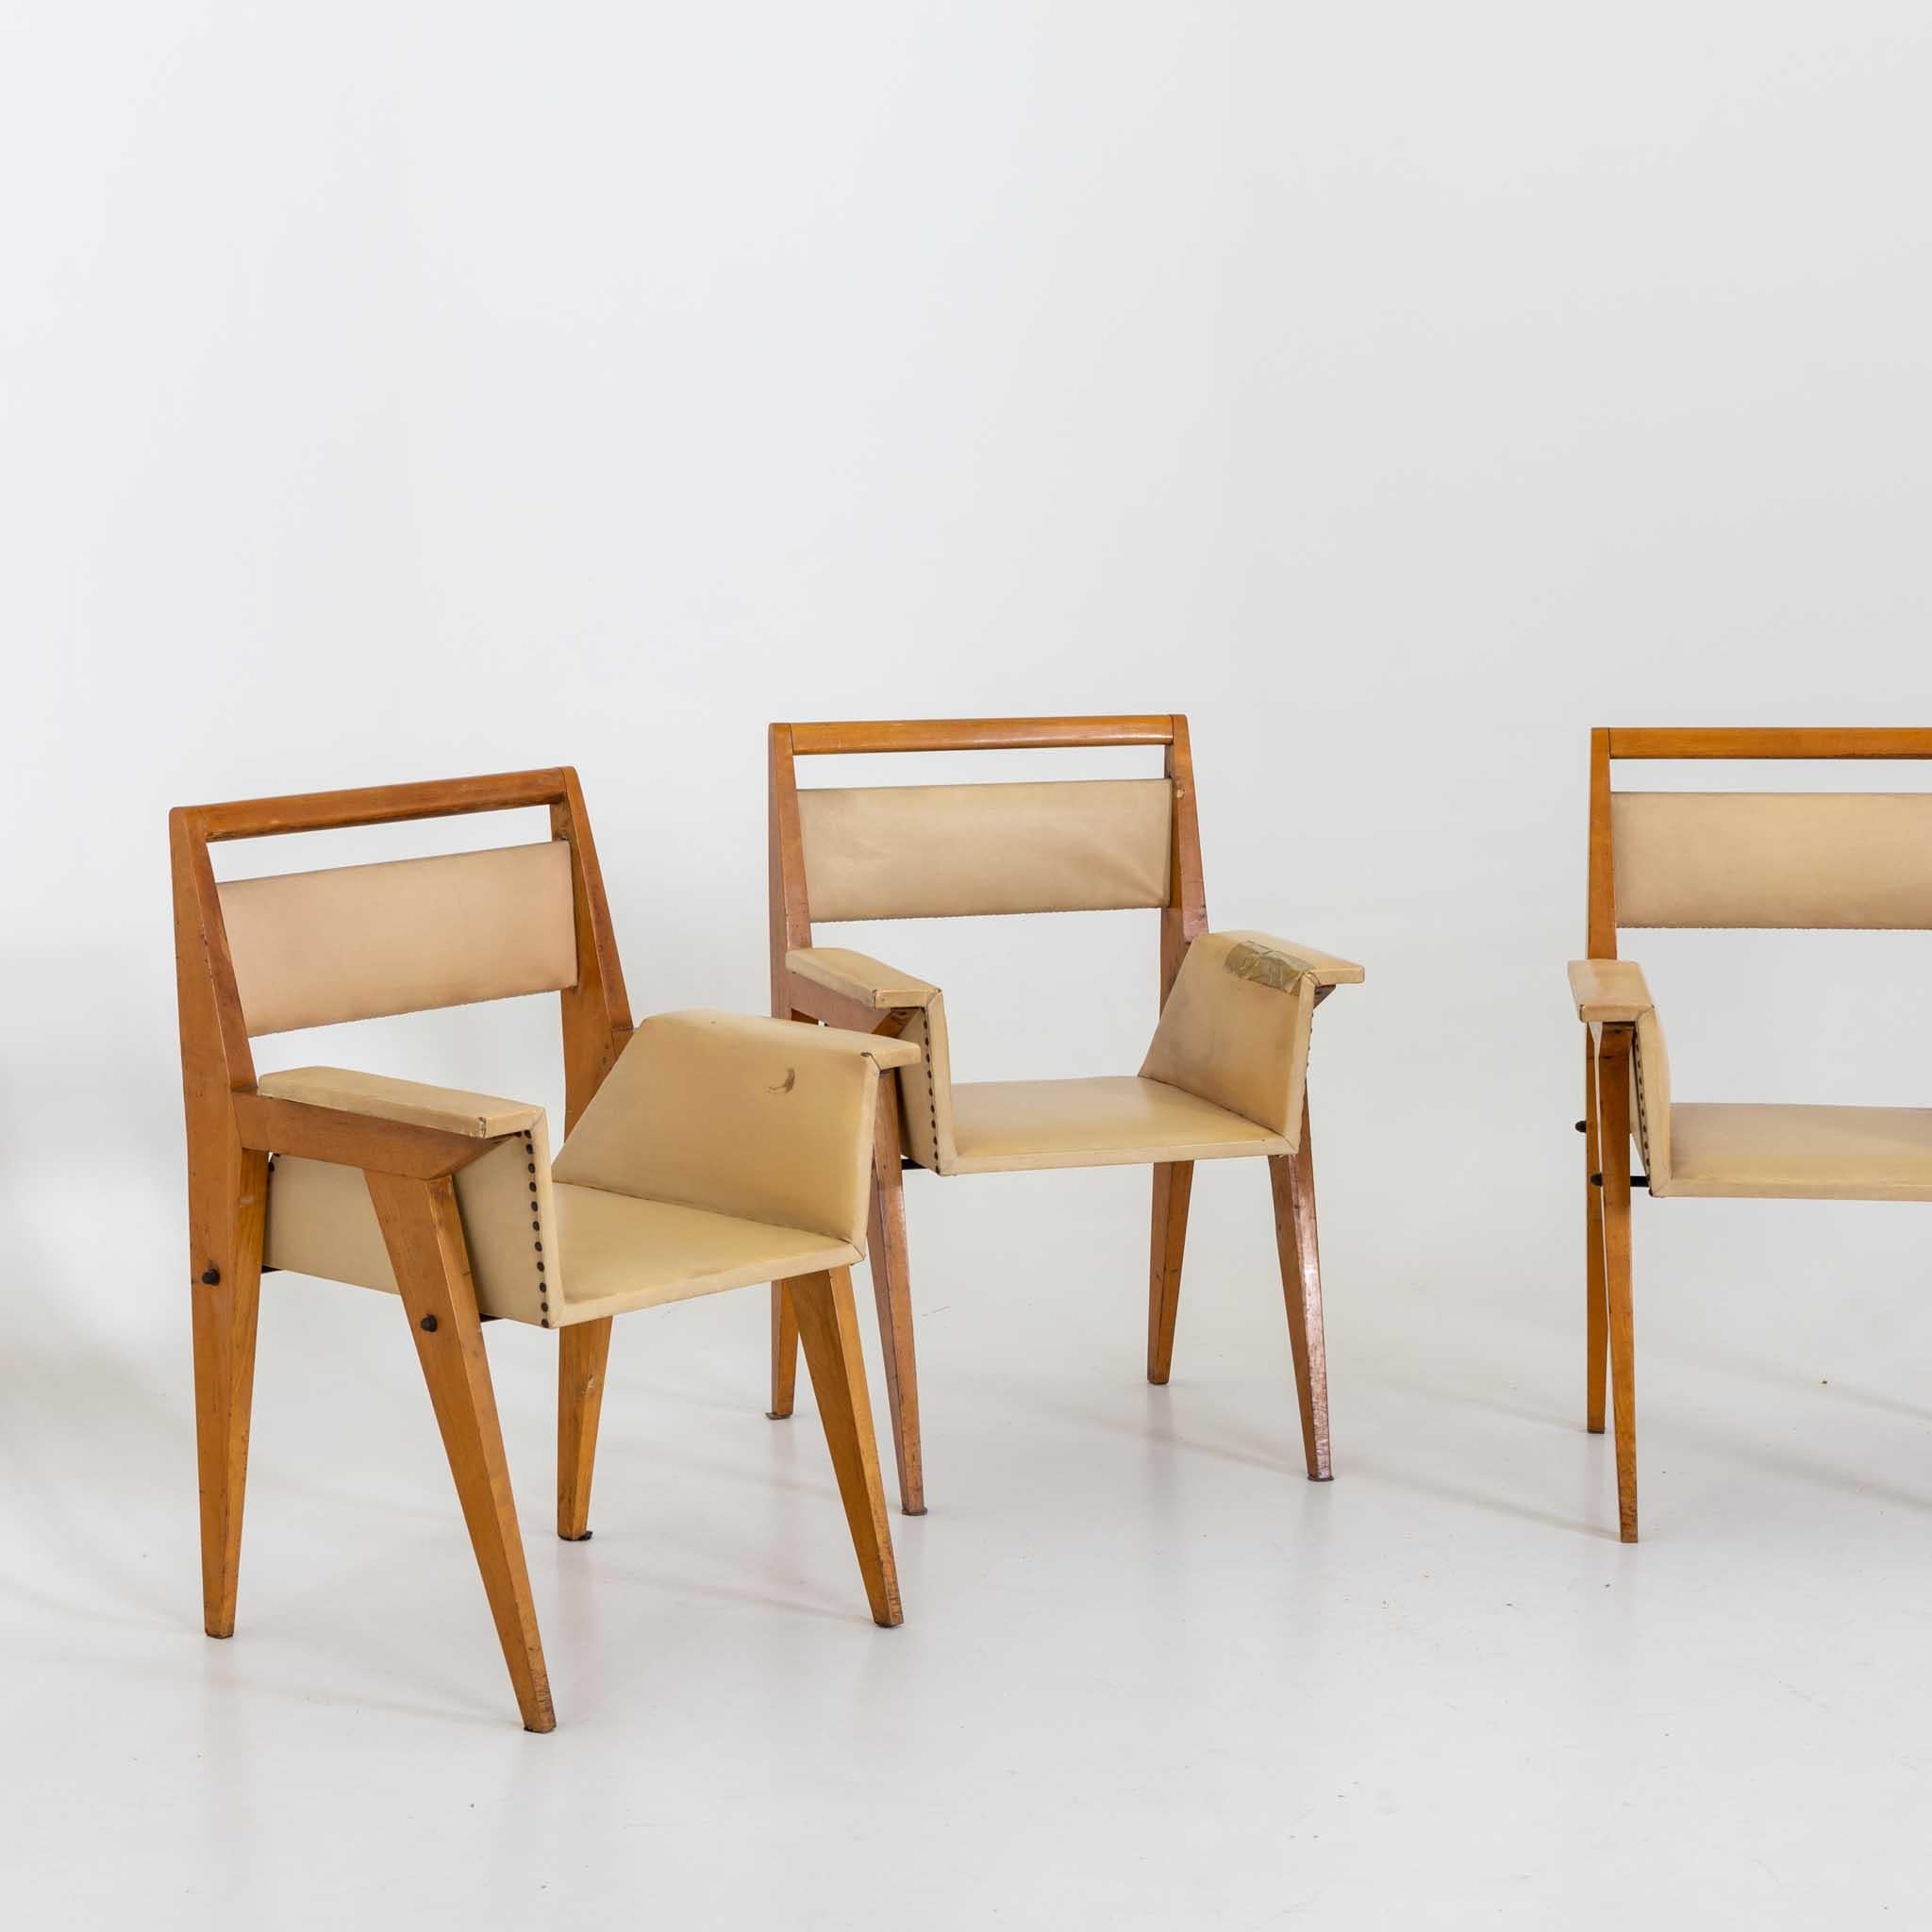 Ensemble de trois fauteuils tapissés en similicuir jaune sur une structure en bois. Signes d'âge et d'utilisation. Conçu au milieu du 20e siècle pour un studio de l'architecte Vittorio Armellini. Les plans originaux sont disponibles. Etat non